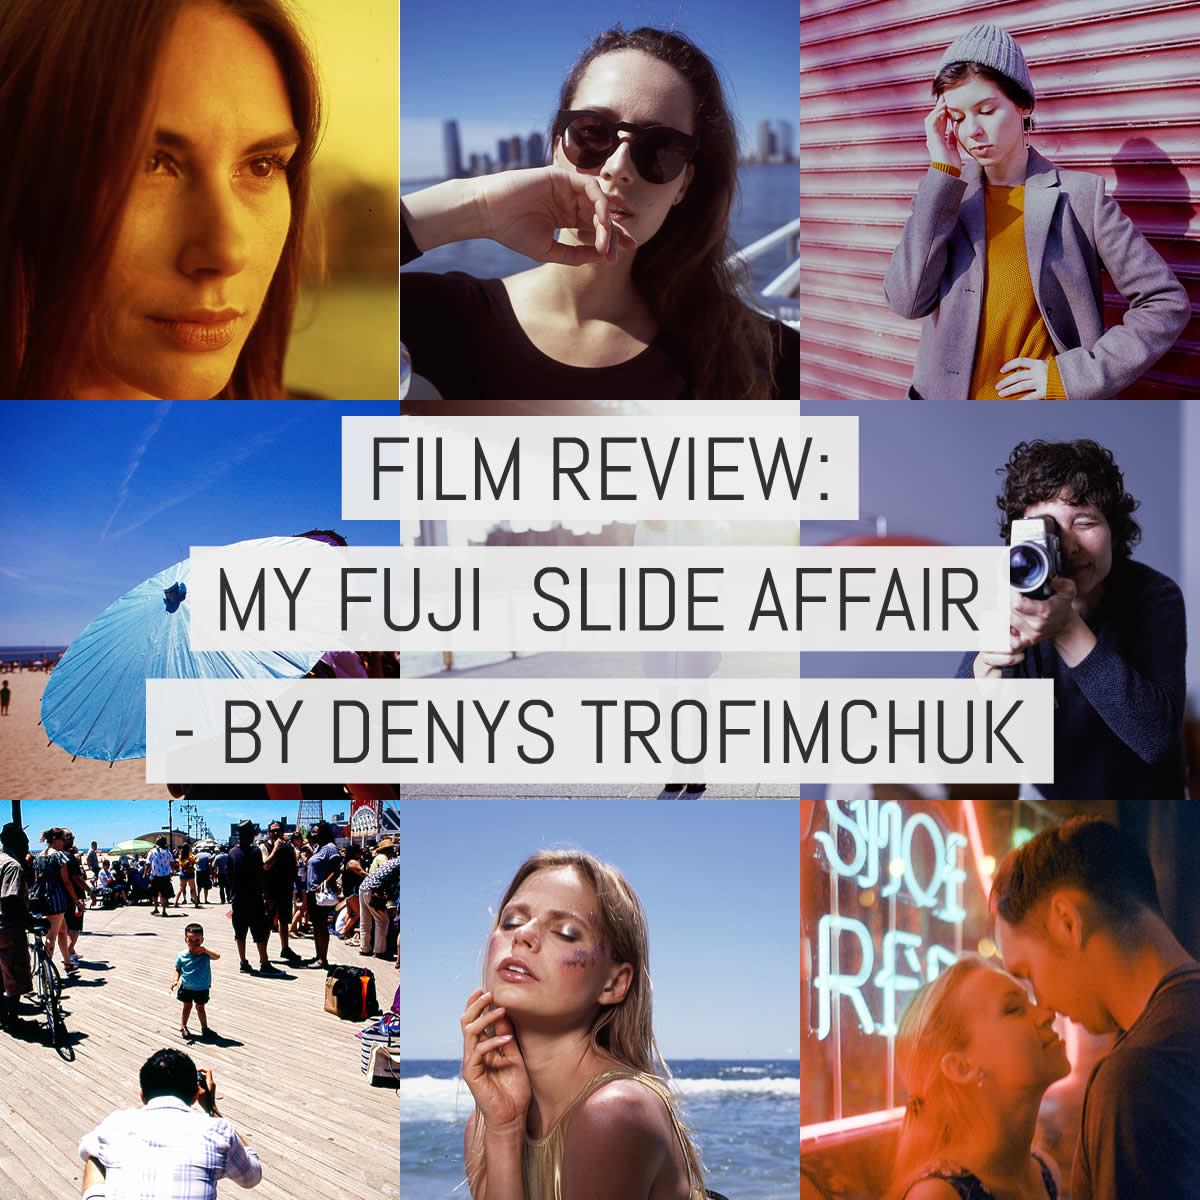 Cover - Film review - My Fuji Slide Affair